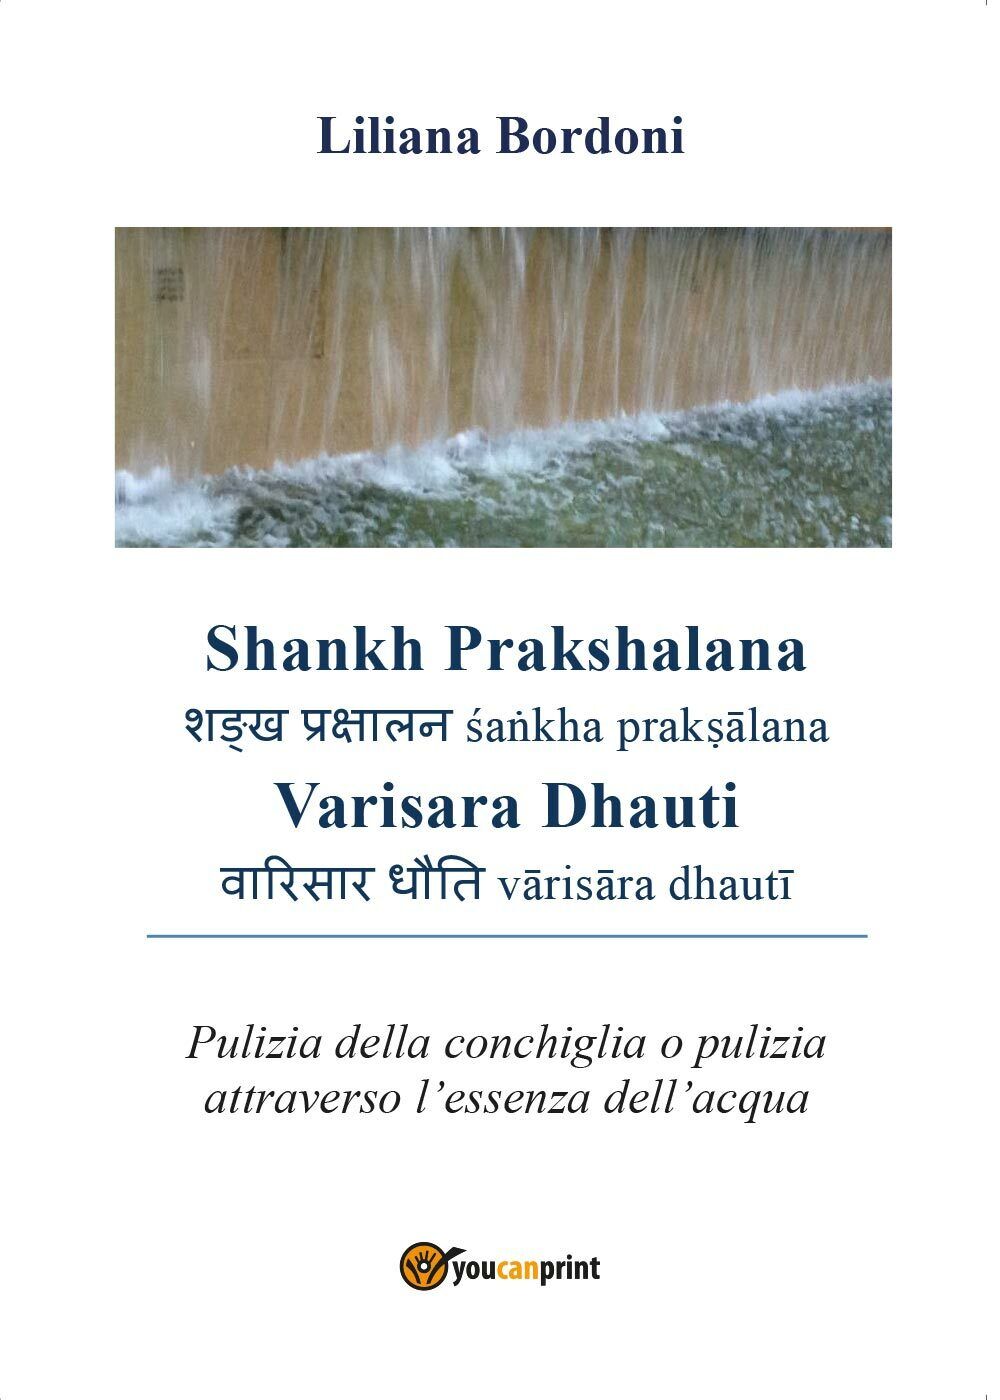 Shankh Prakshalana Varisara Dhauti - Pulizia della conchiglia o pulizia [...]